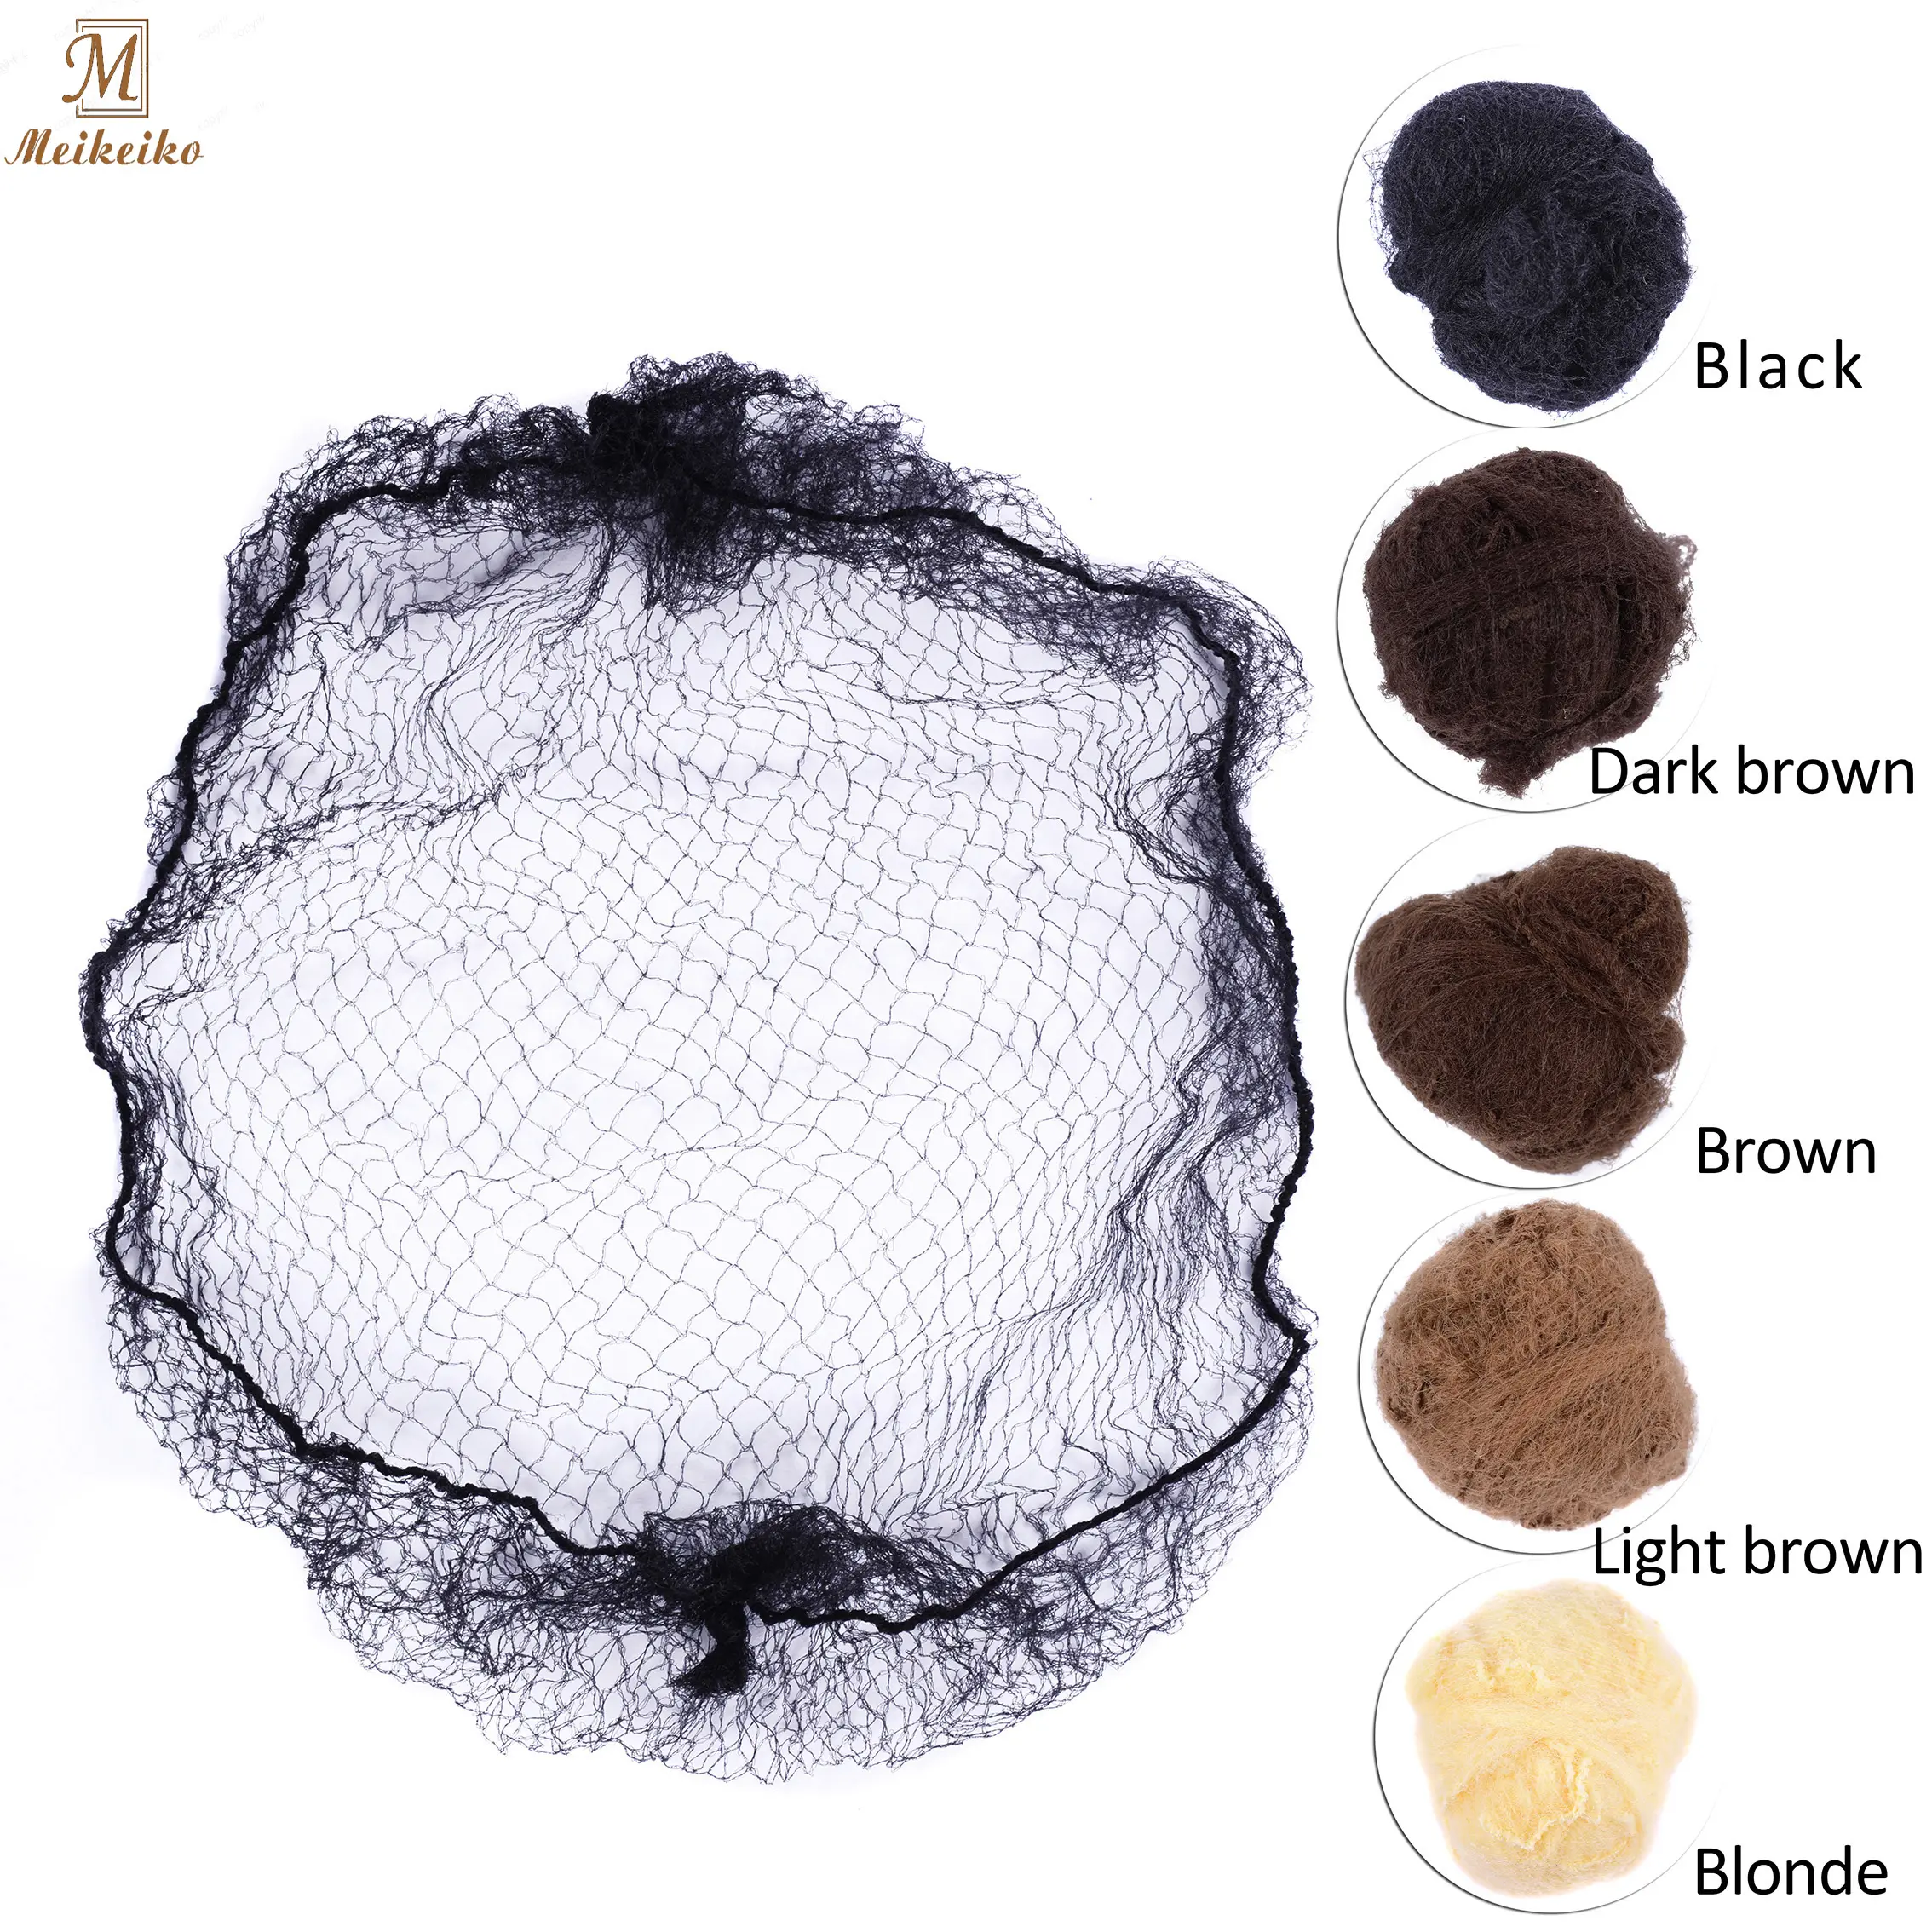 Meikeiko — filet à cheveux en Nylon pour chignon, 5 couleurs, noir, brun, Beige, brun clair, brun clair, accessoire de coiffure